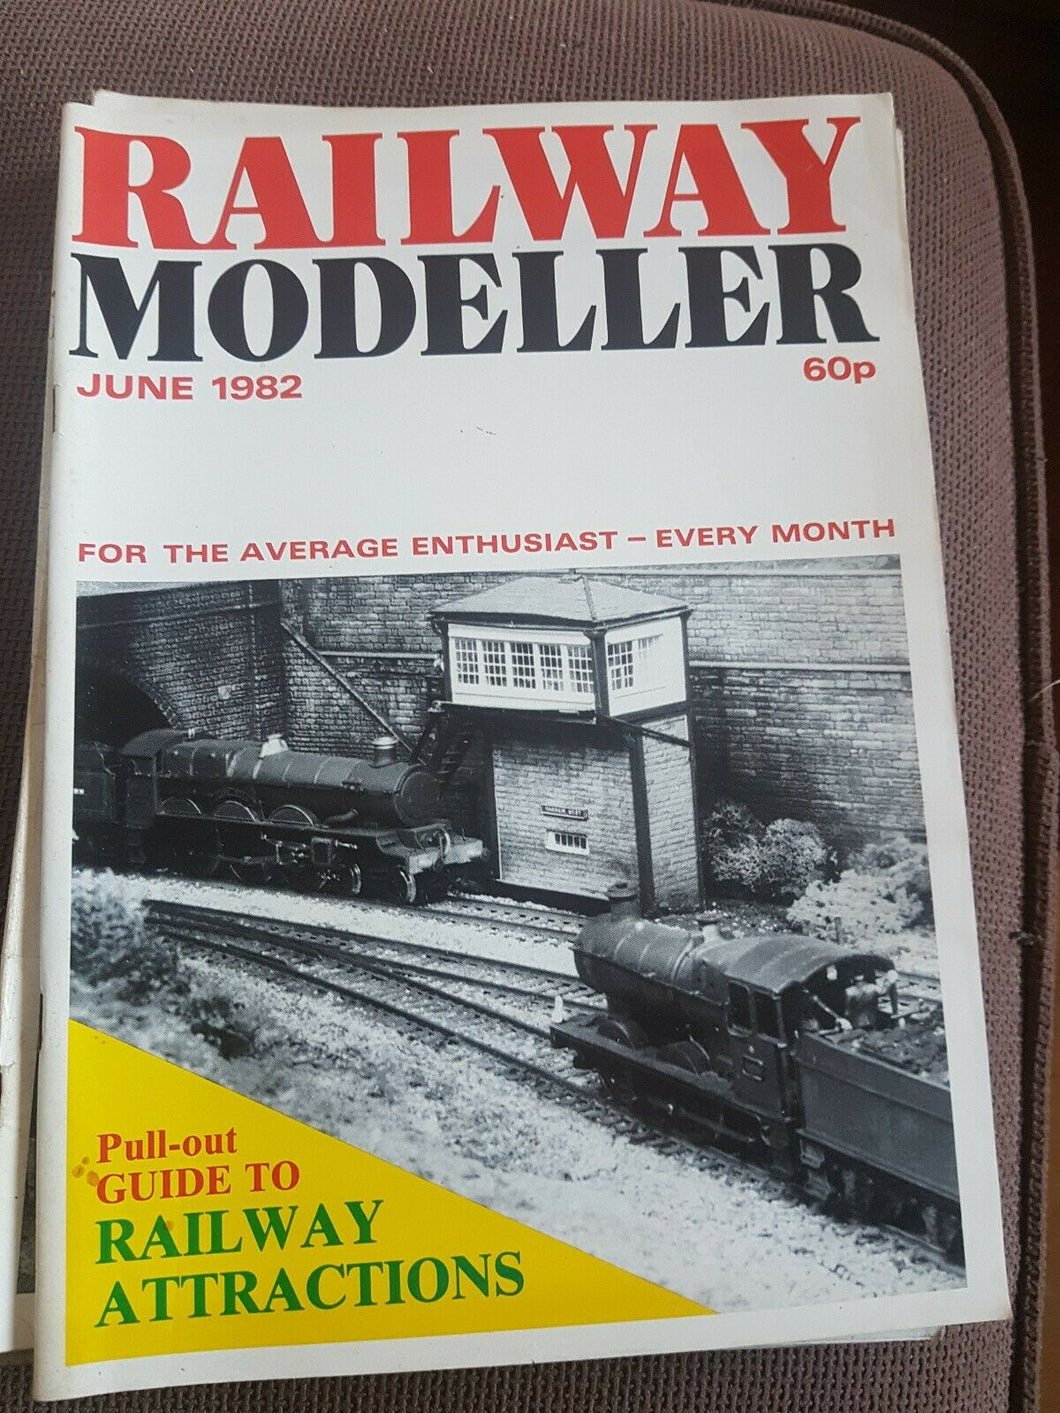 Railway modeller magazine June 1982